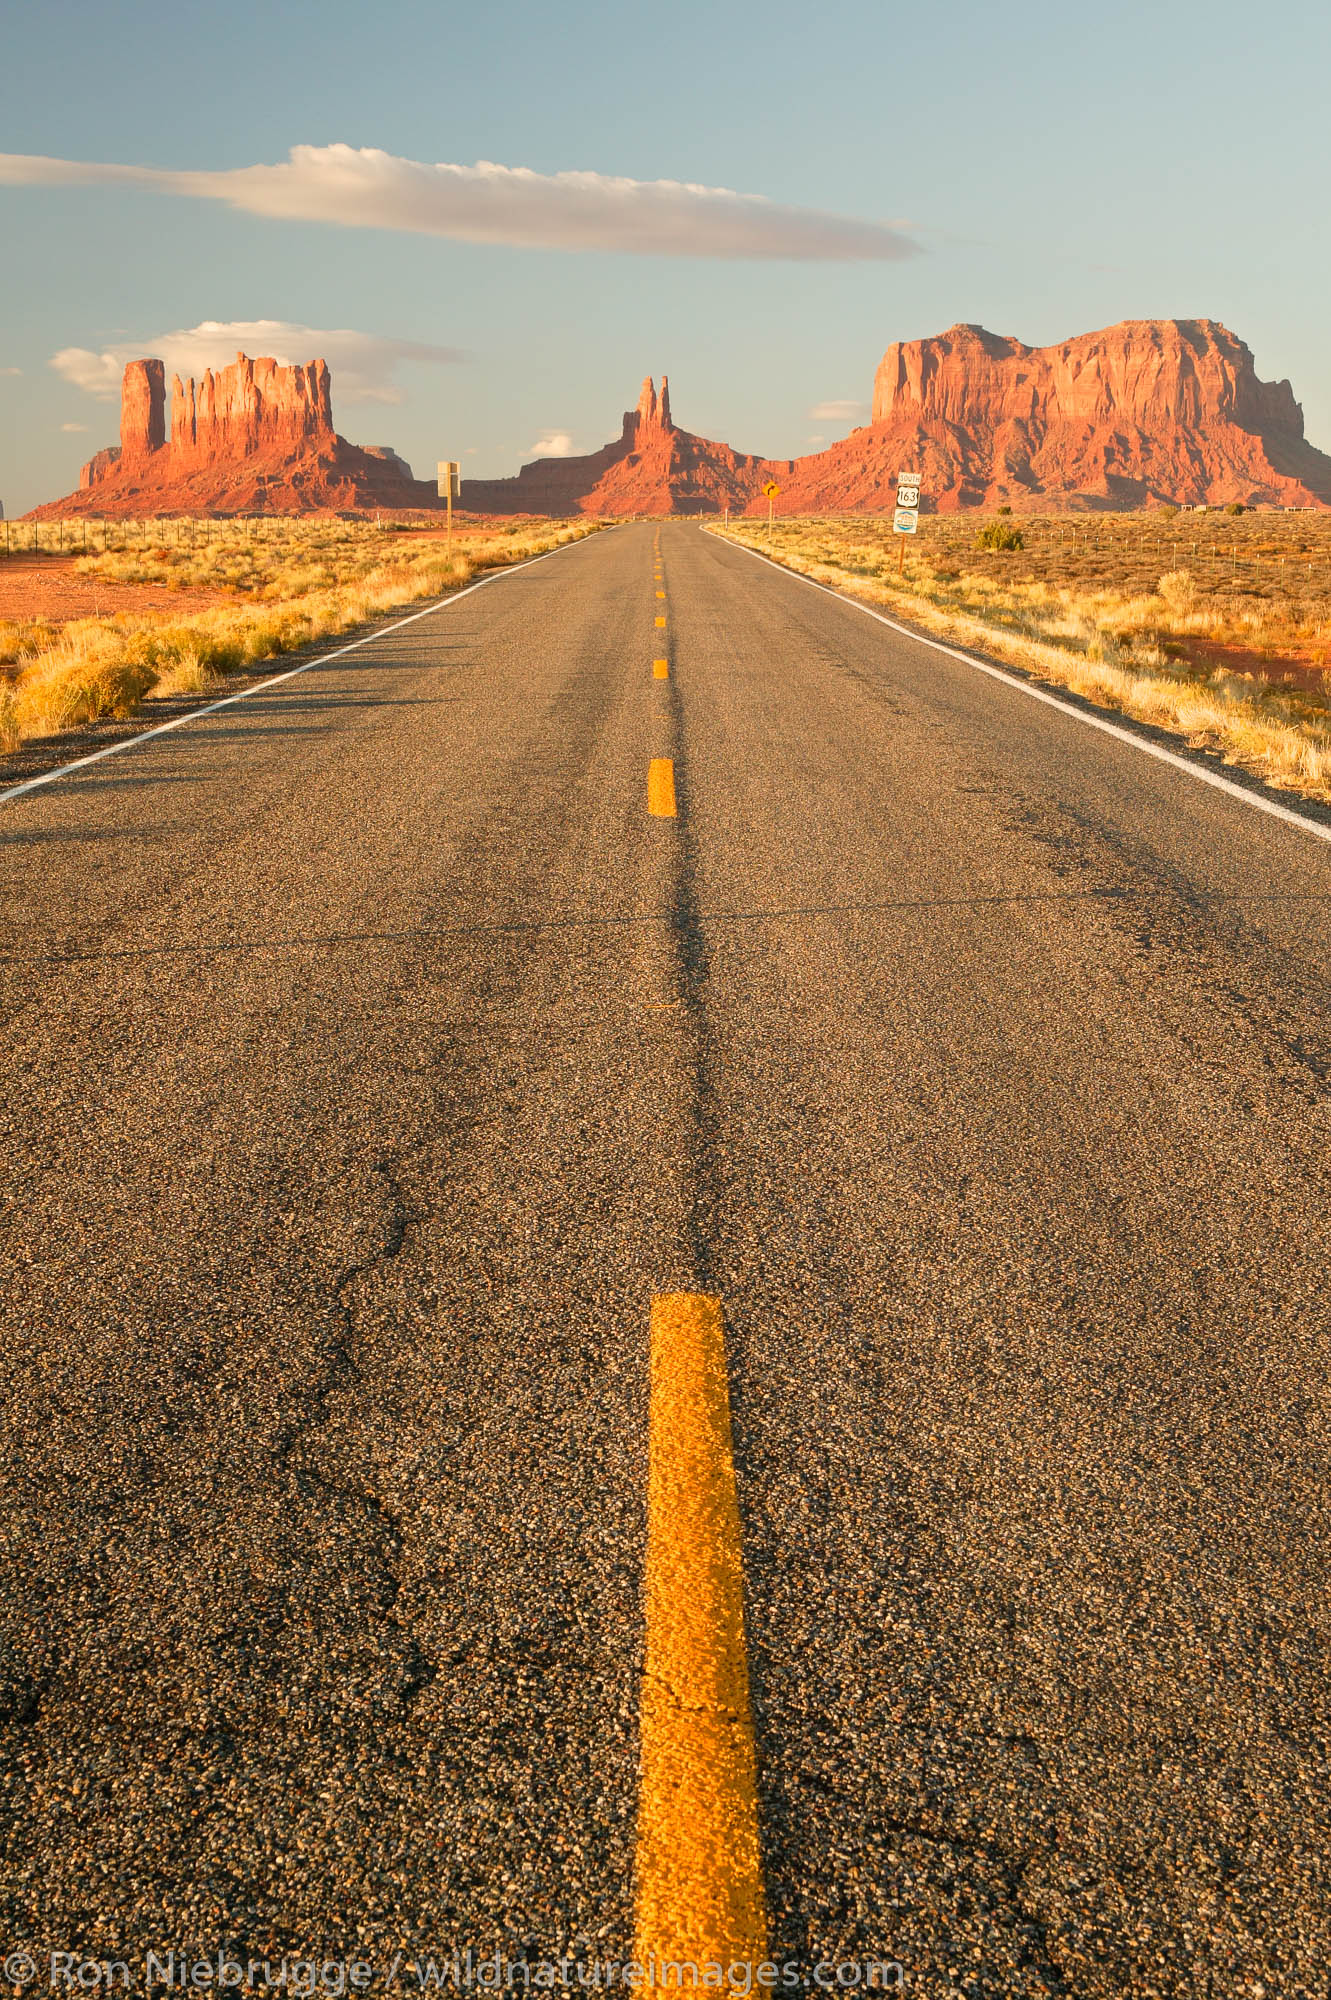 Highway 163 leads towards Monument Valley Navajo Tribal Park, Utah.